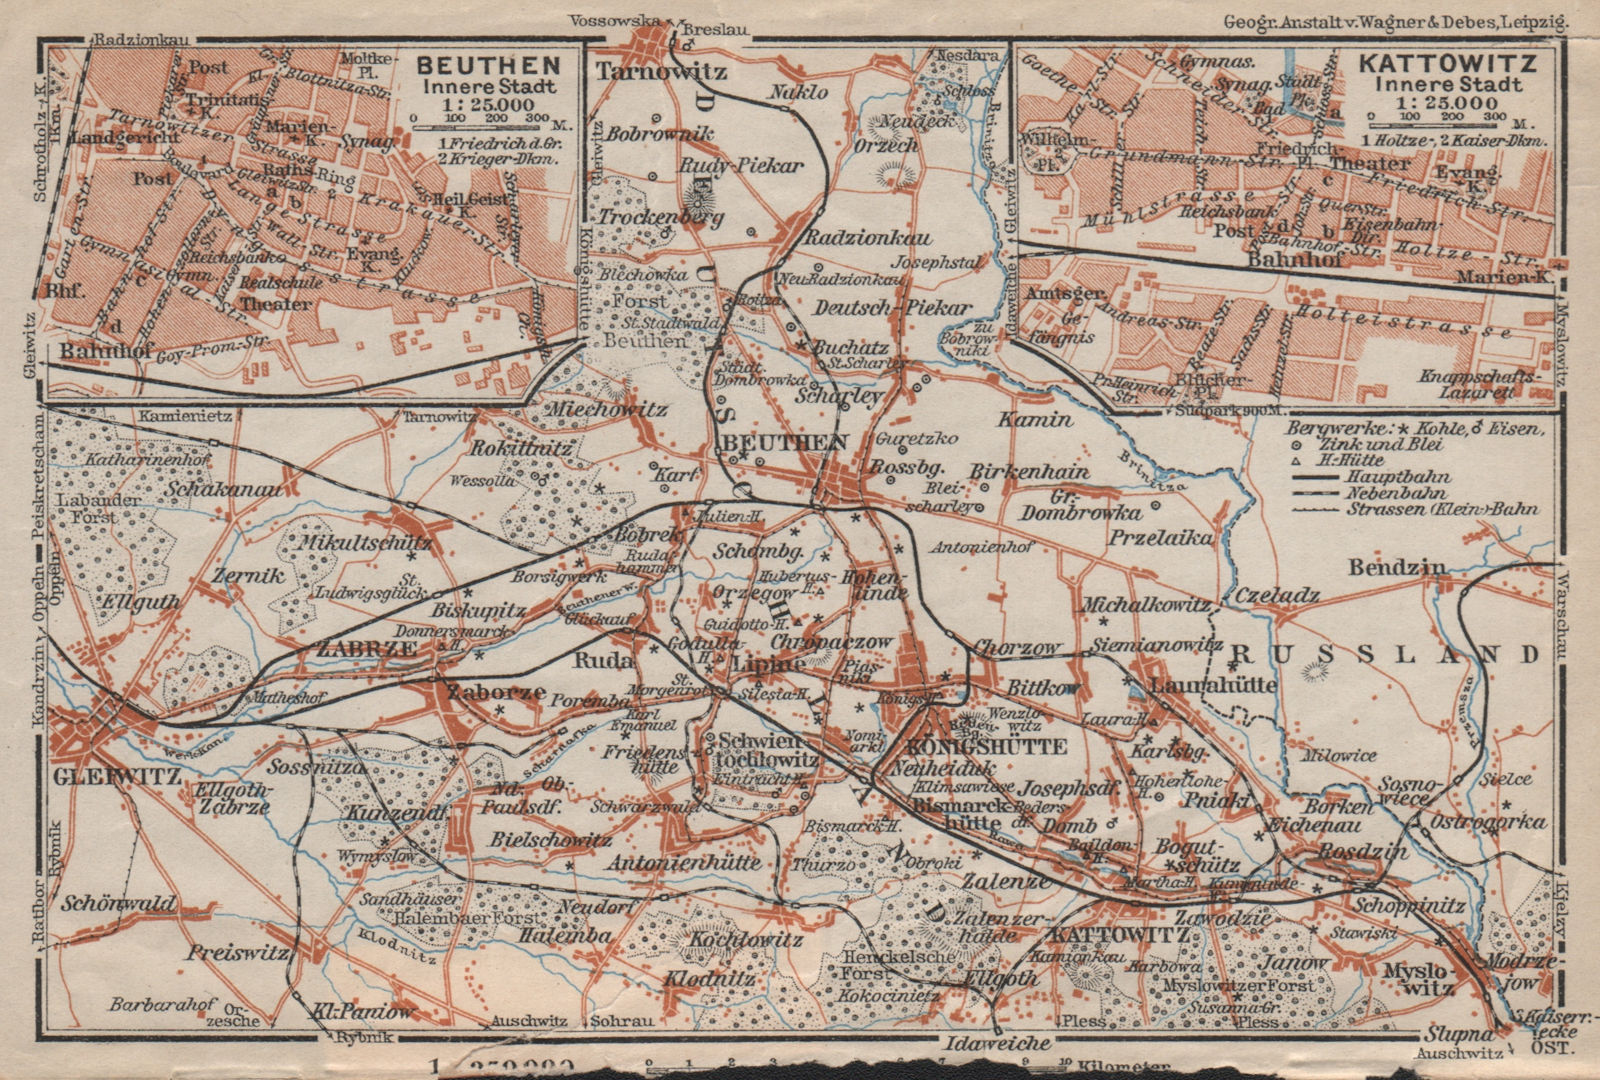 Associate Product METROPOLIA SILESIA. BYTOM & KATOWICE city plan miasta. Gliwice. Poland mapa 1910